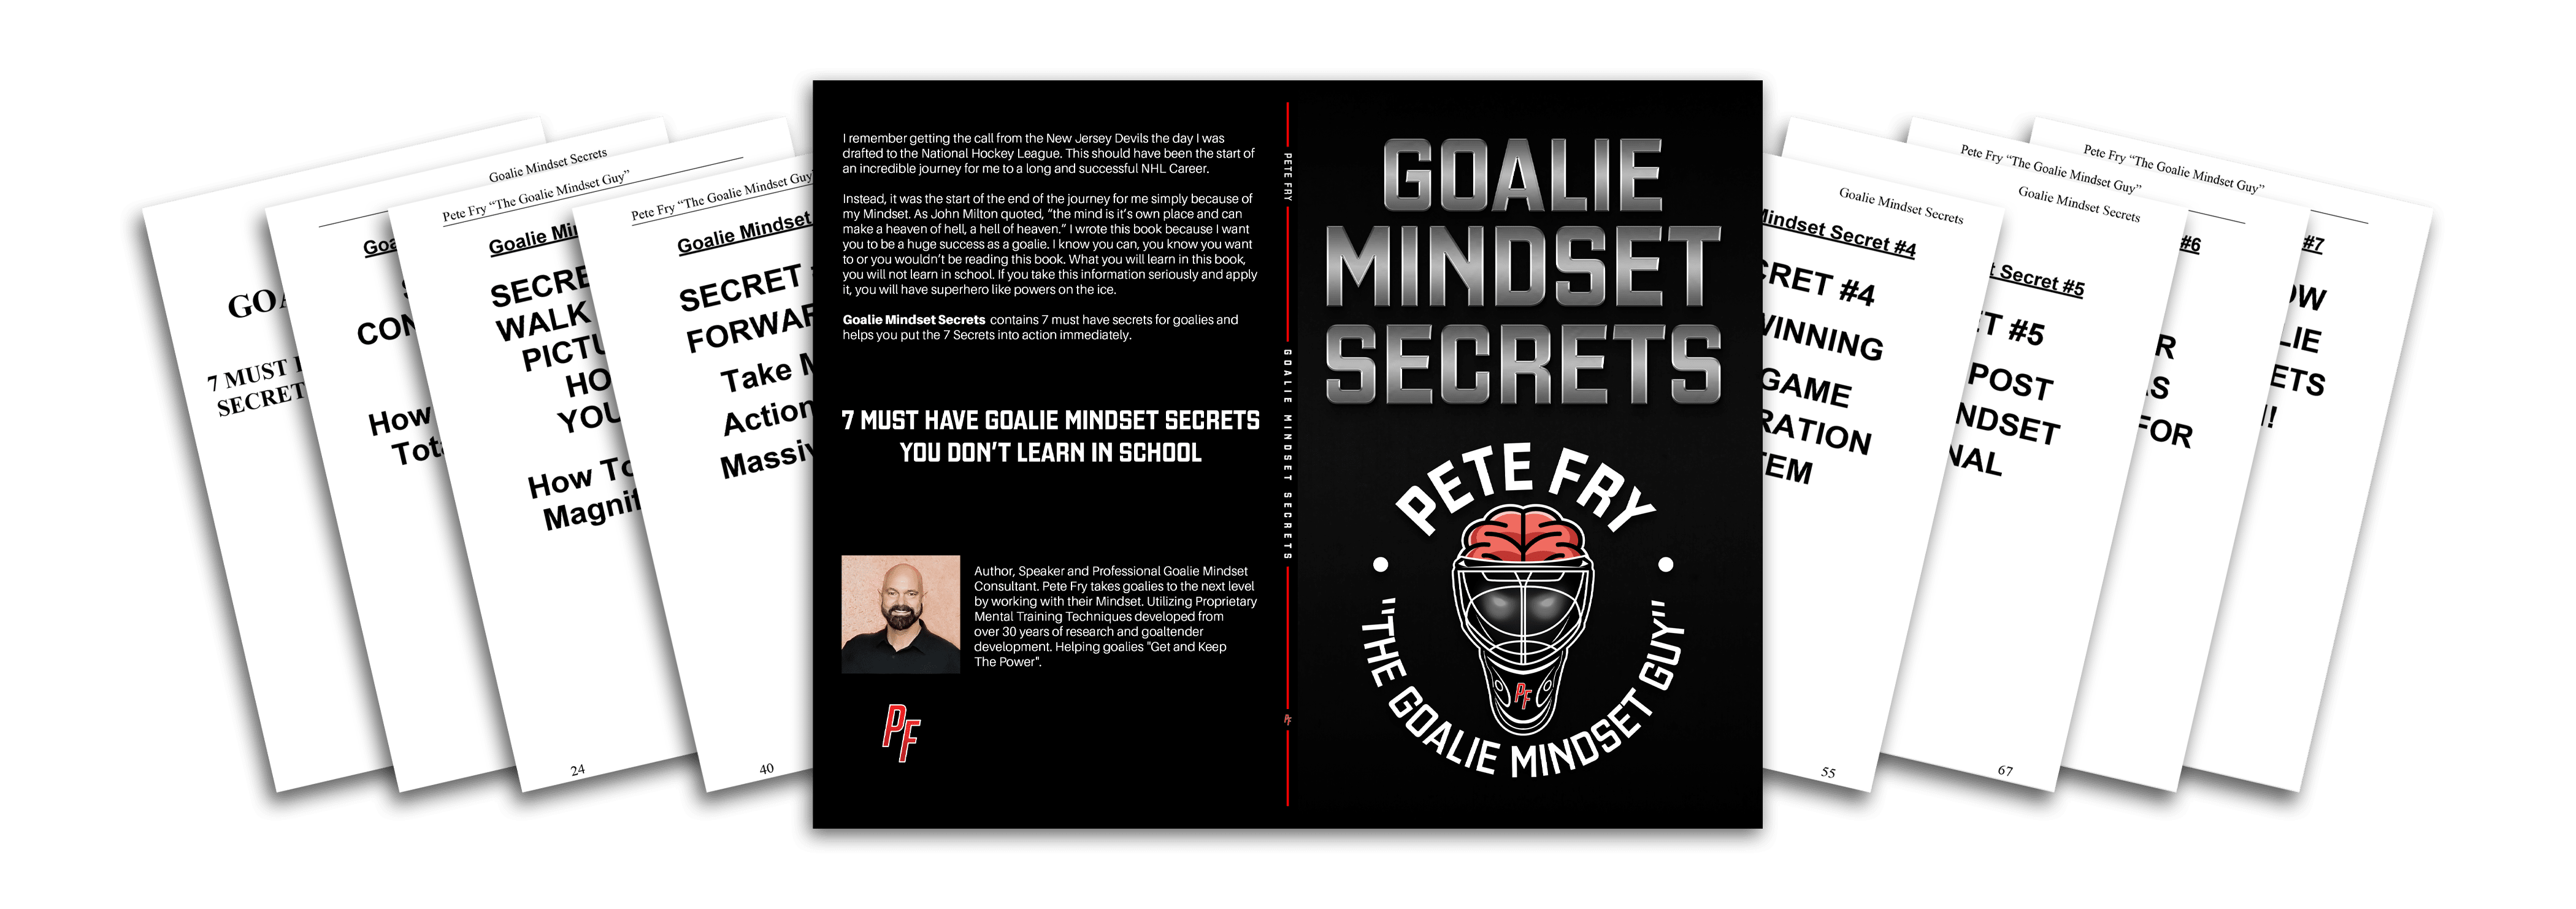 Goalie Mindset Secrets Book Bundle